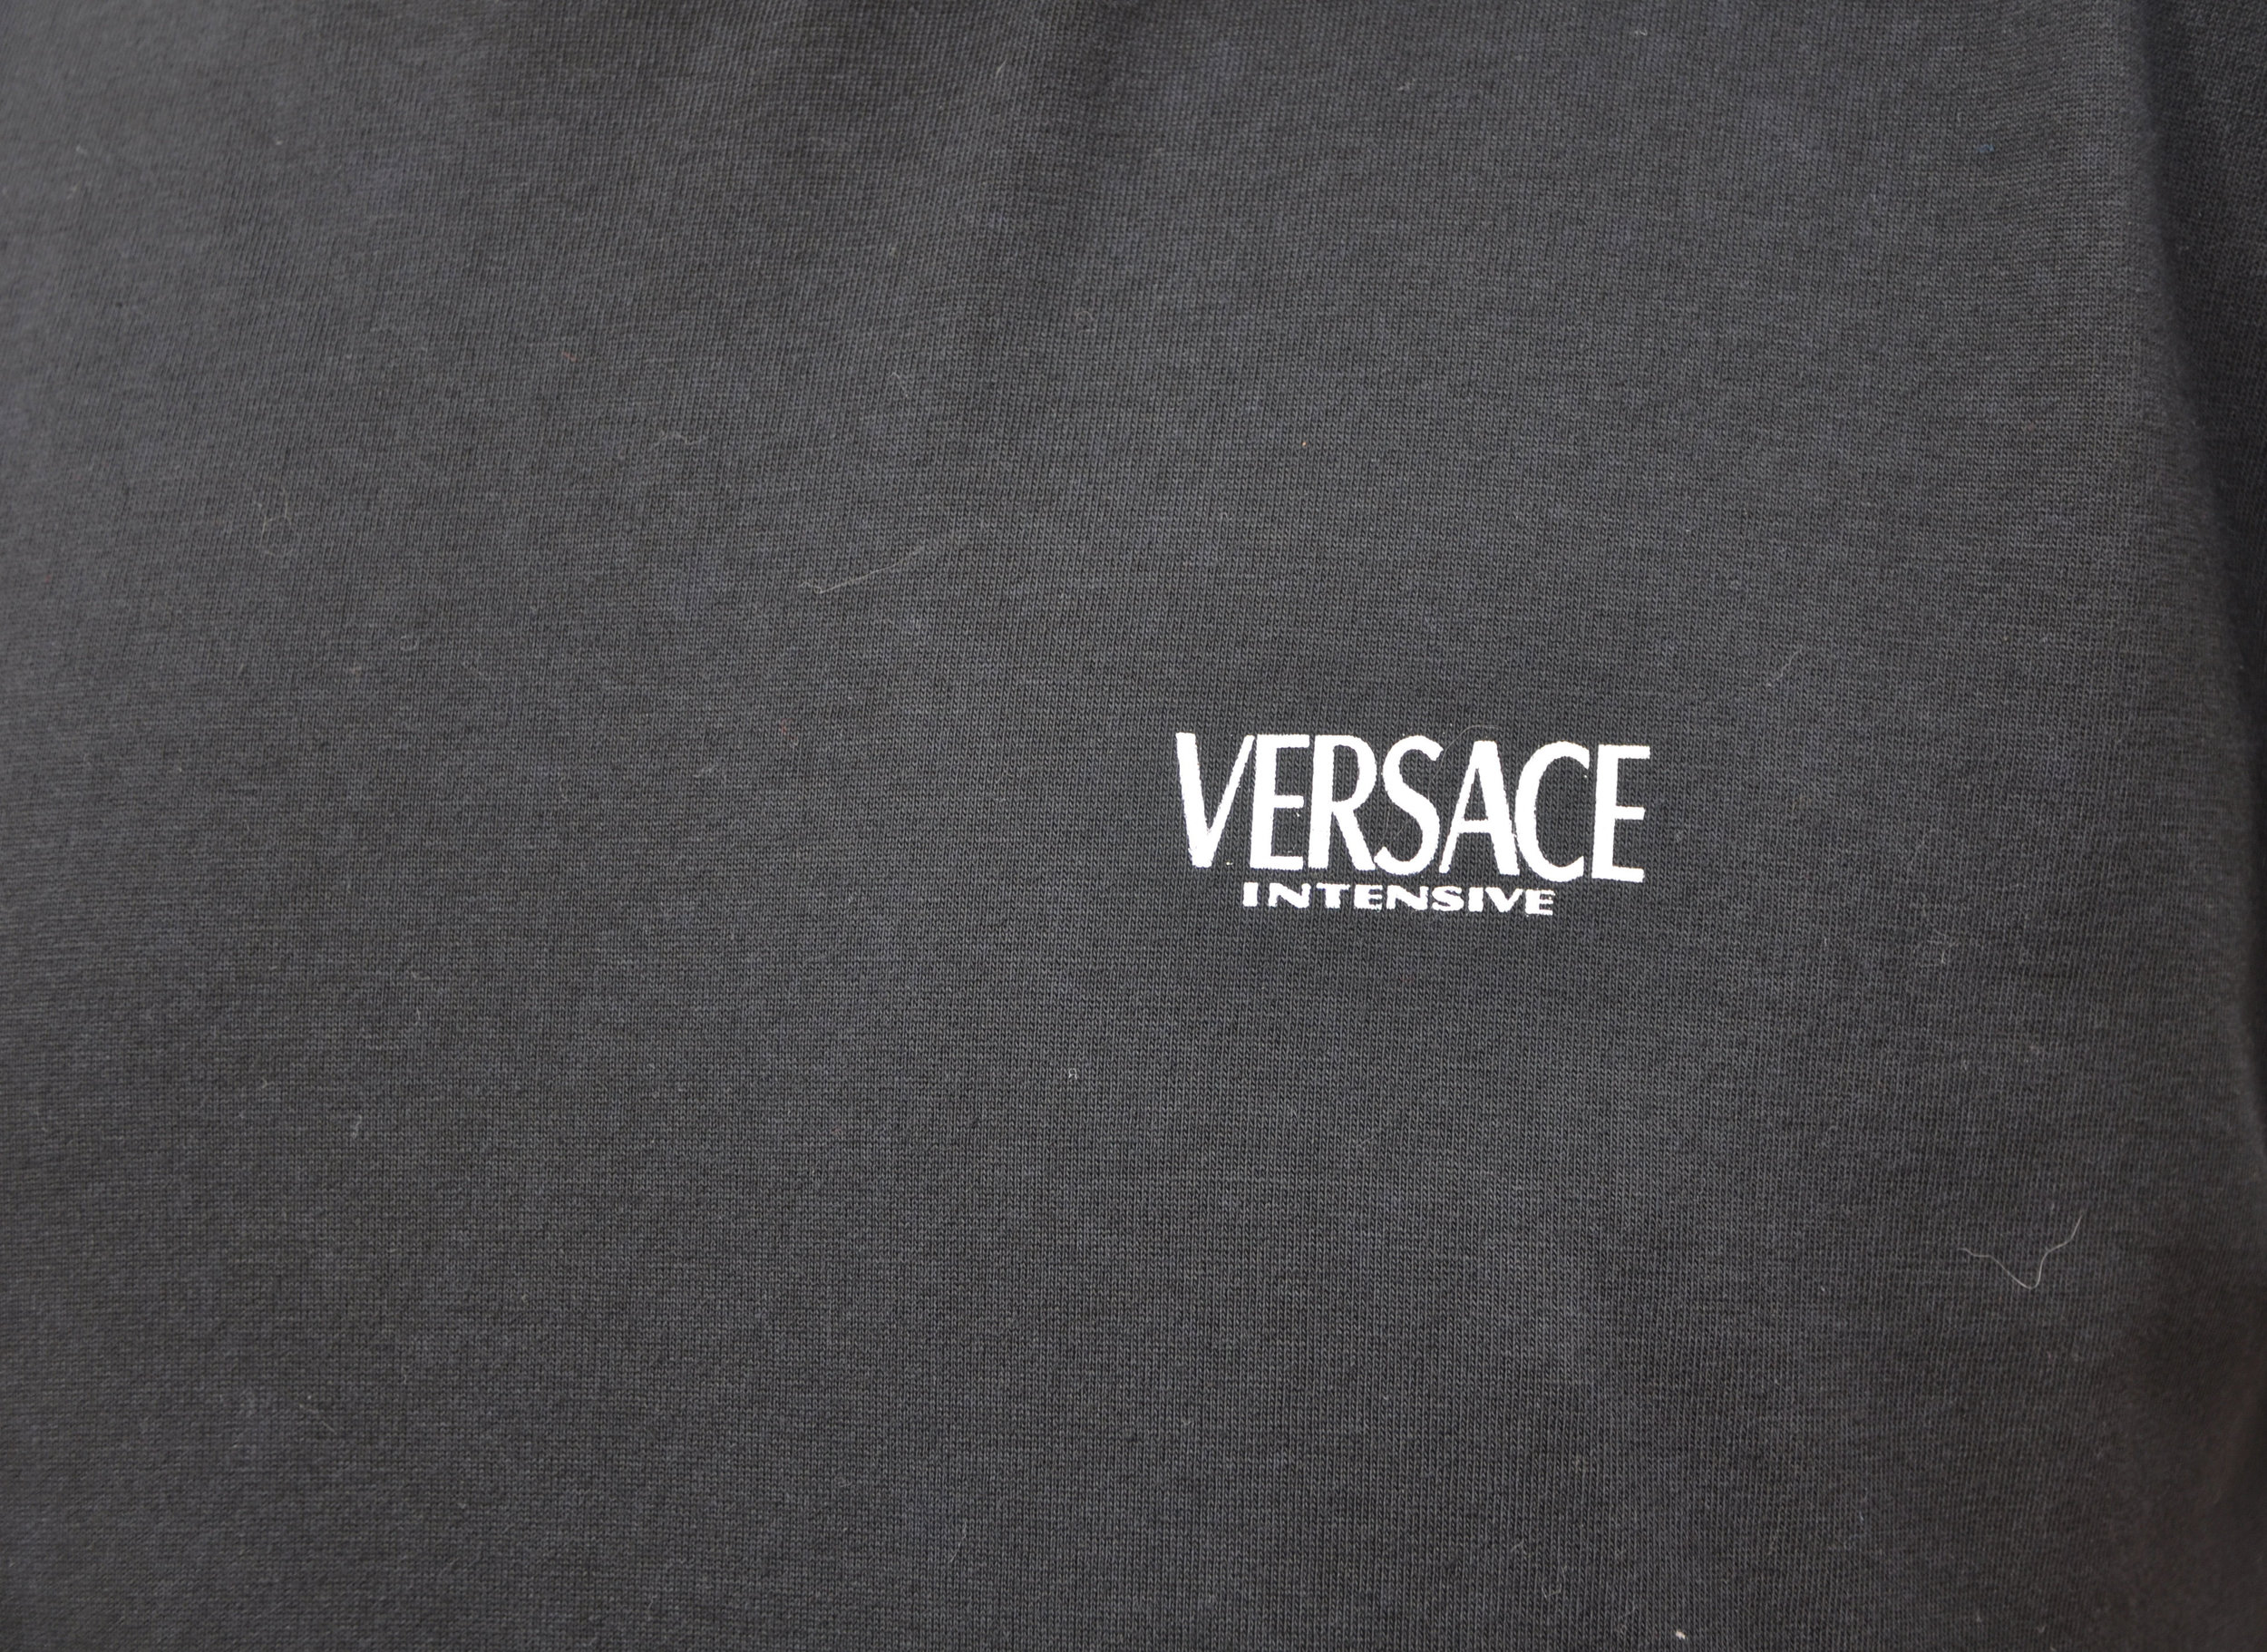 versace intensive t shirt